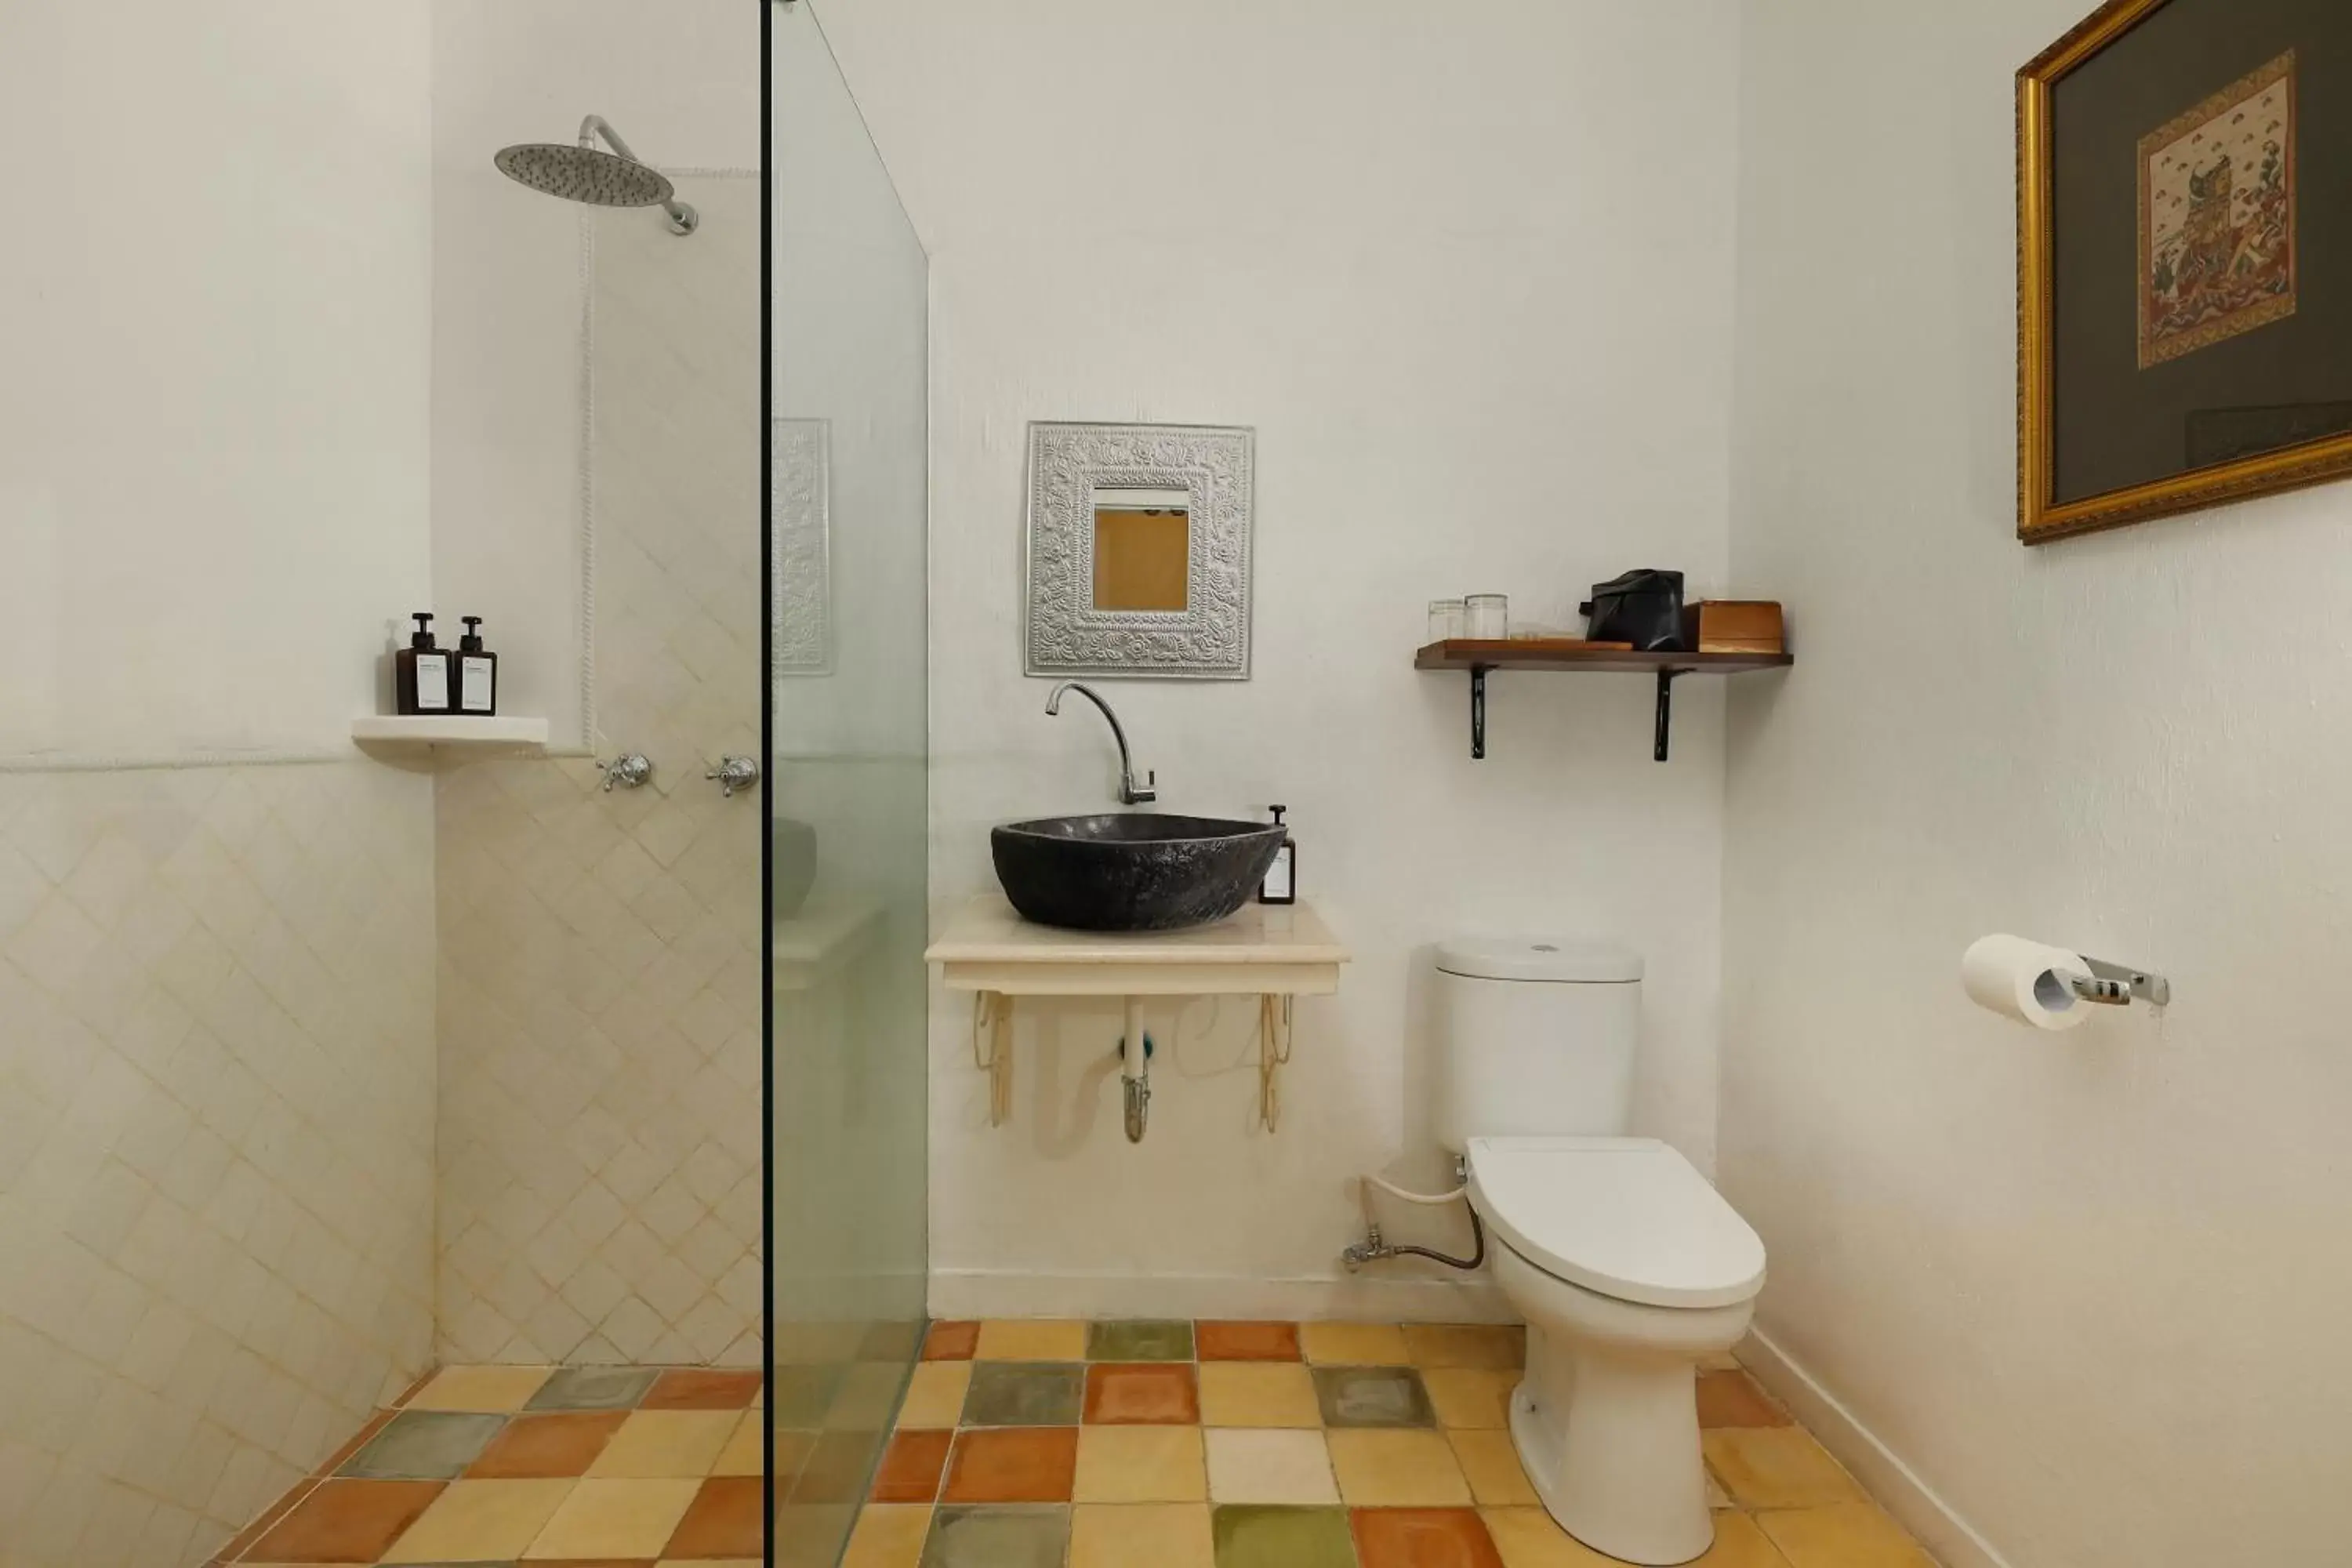 Toilet, Bathroom in Puri Tempo Doeloe Boutique Hotel